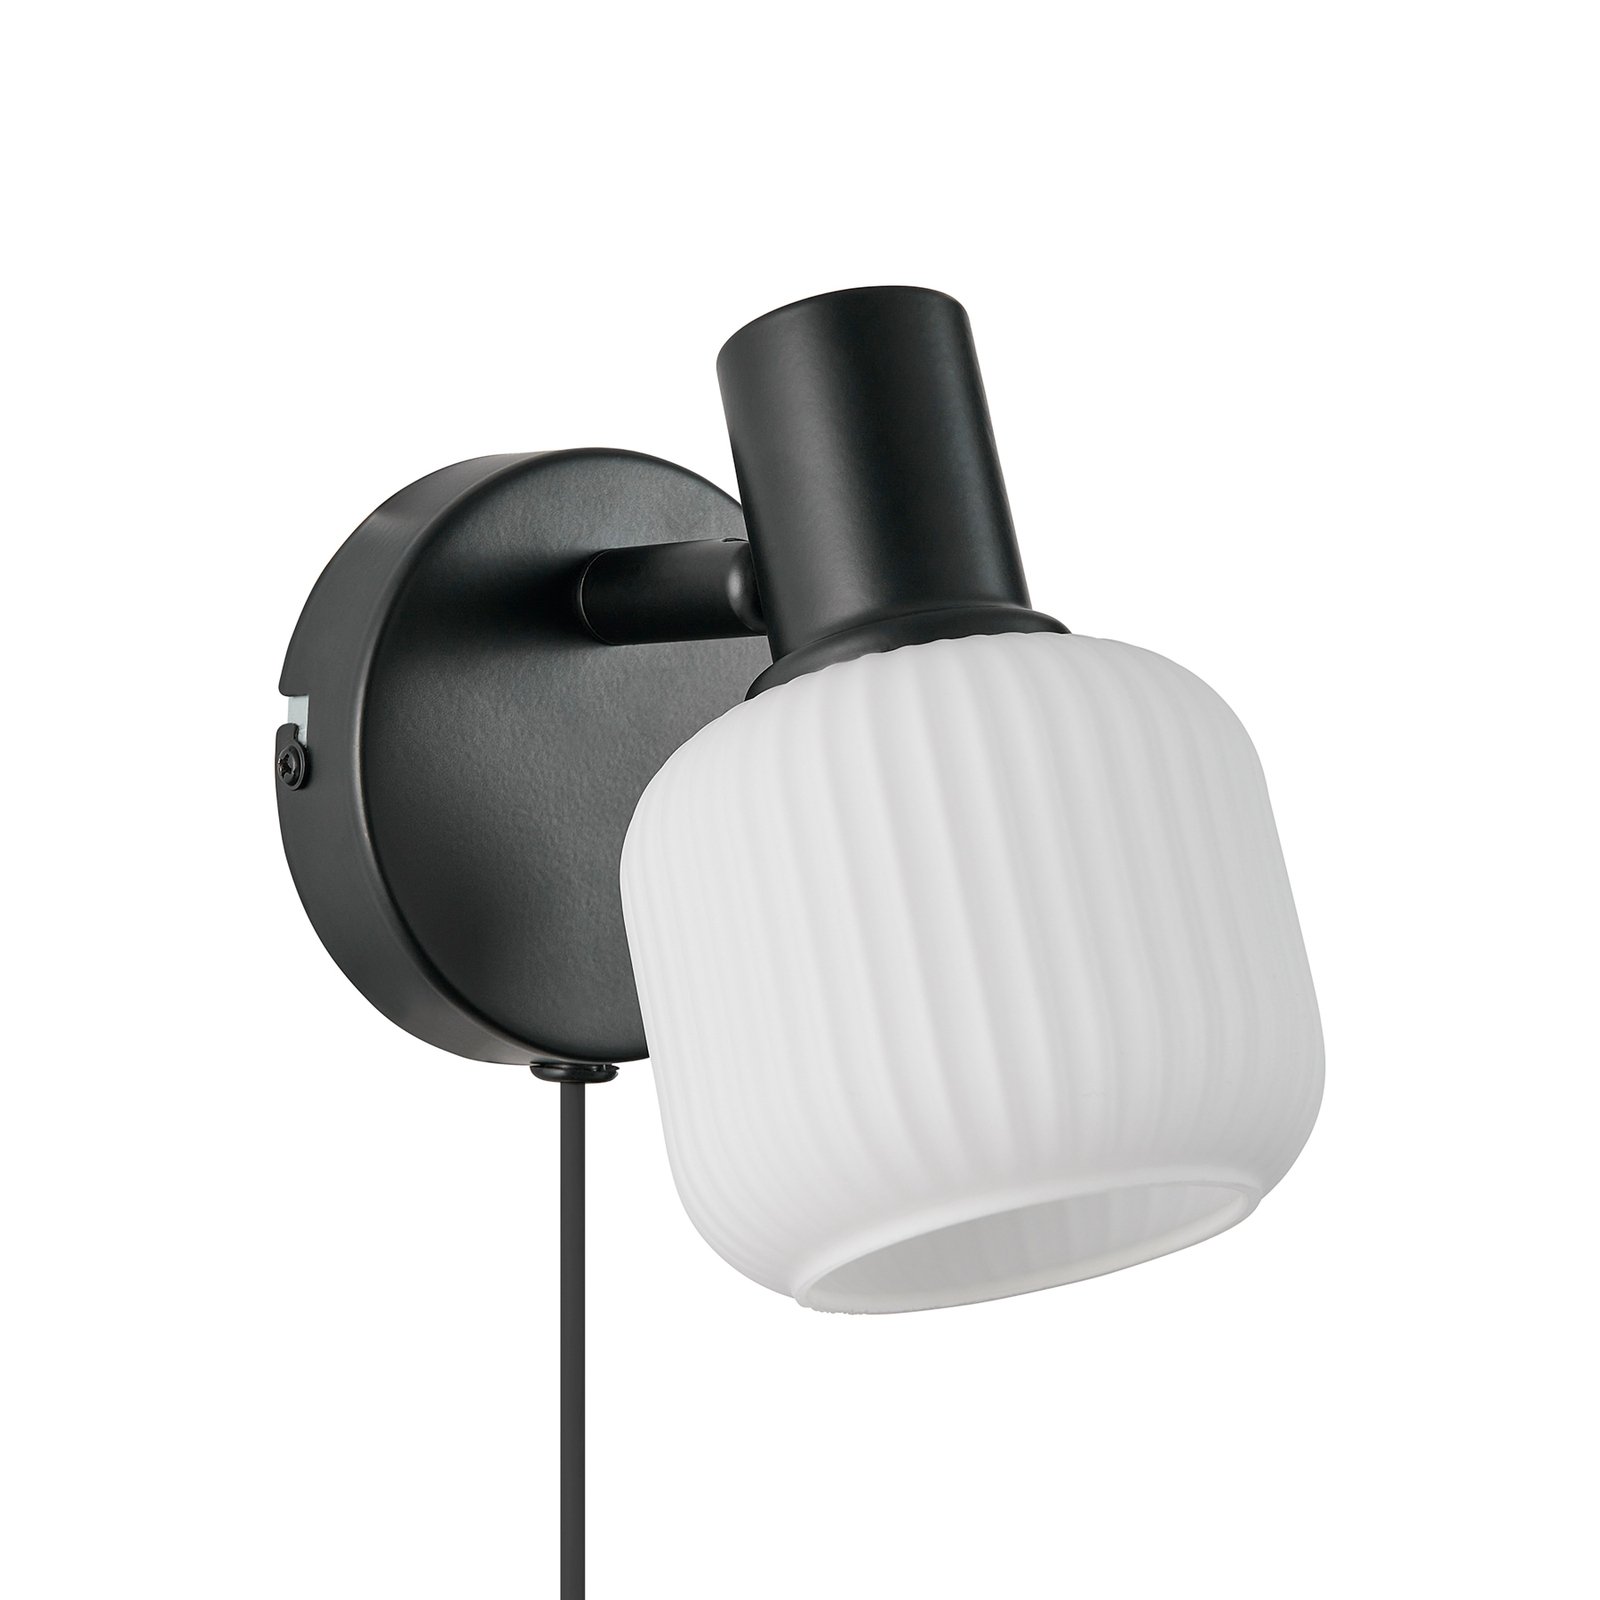 Milford Mini sienas lampa, melna, ar rievotu stiklu, ar kontaktdakšu